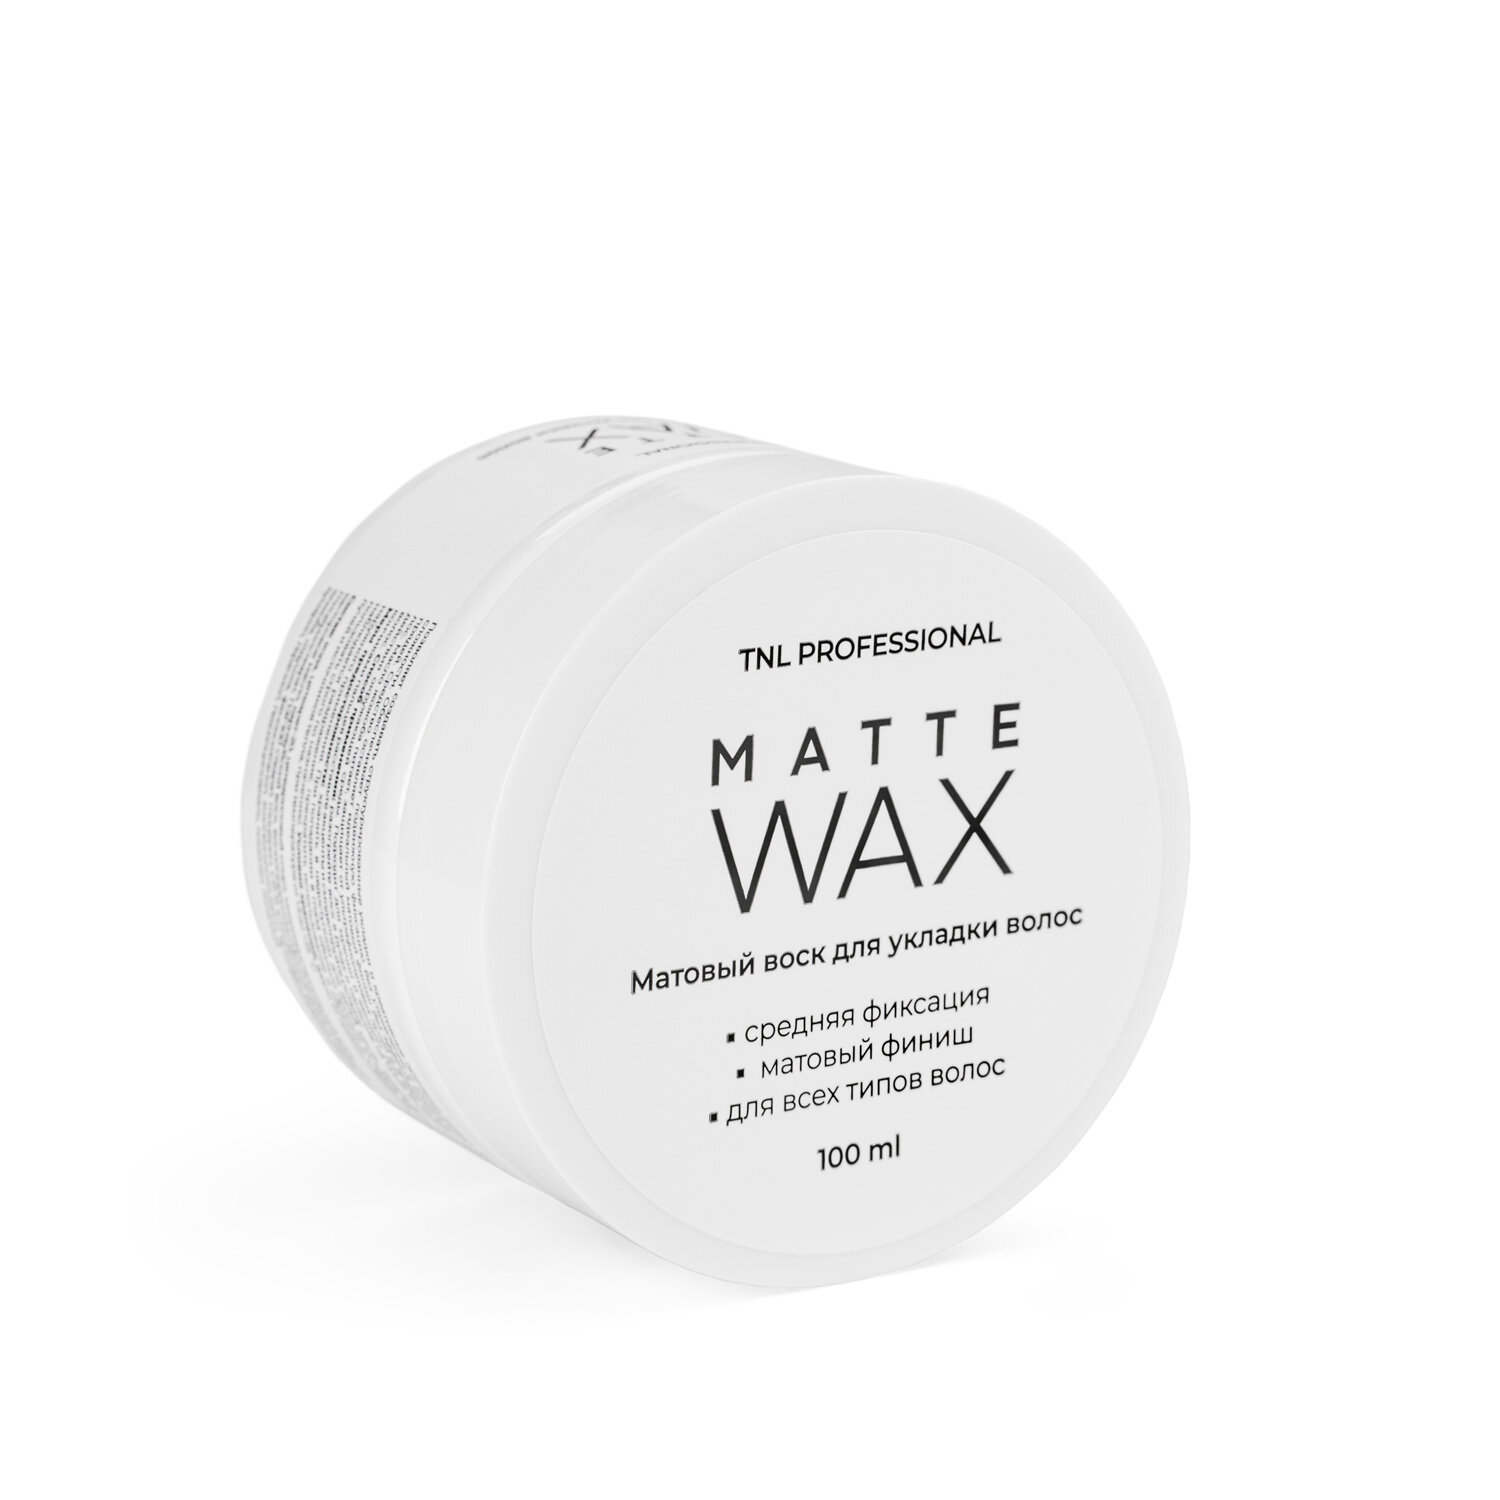 TNL, Matte Wax - матовый воск для укладки волос, 100 мл